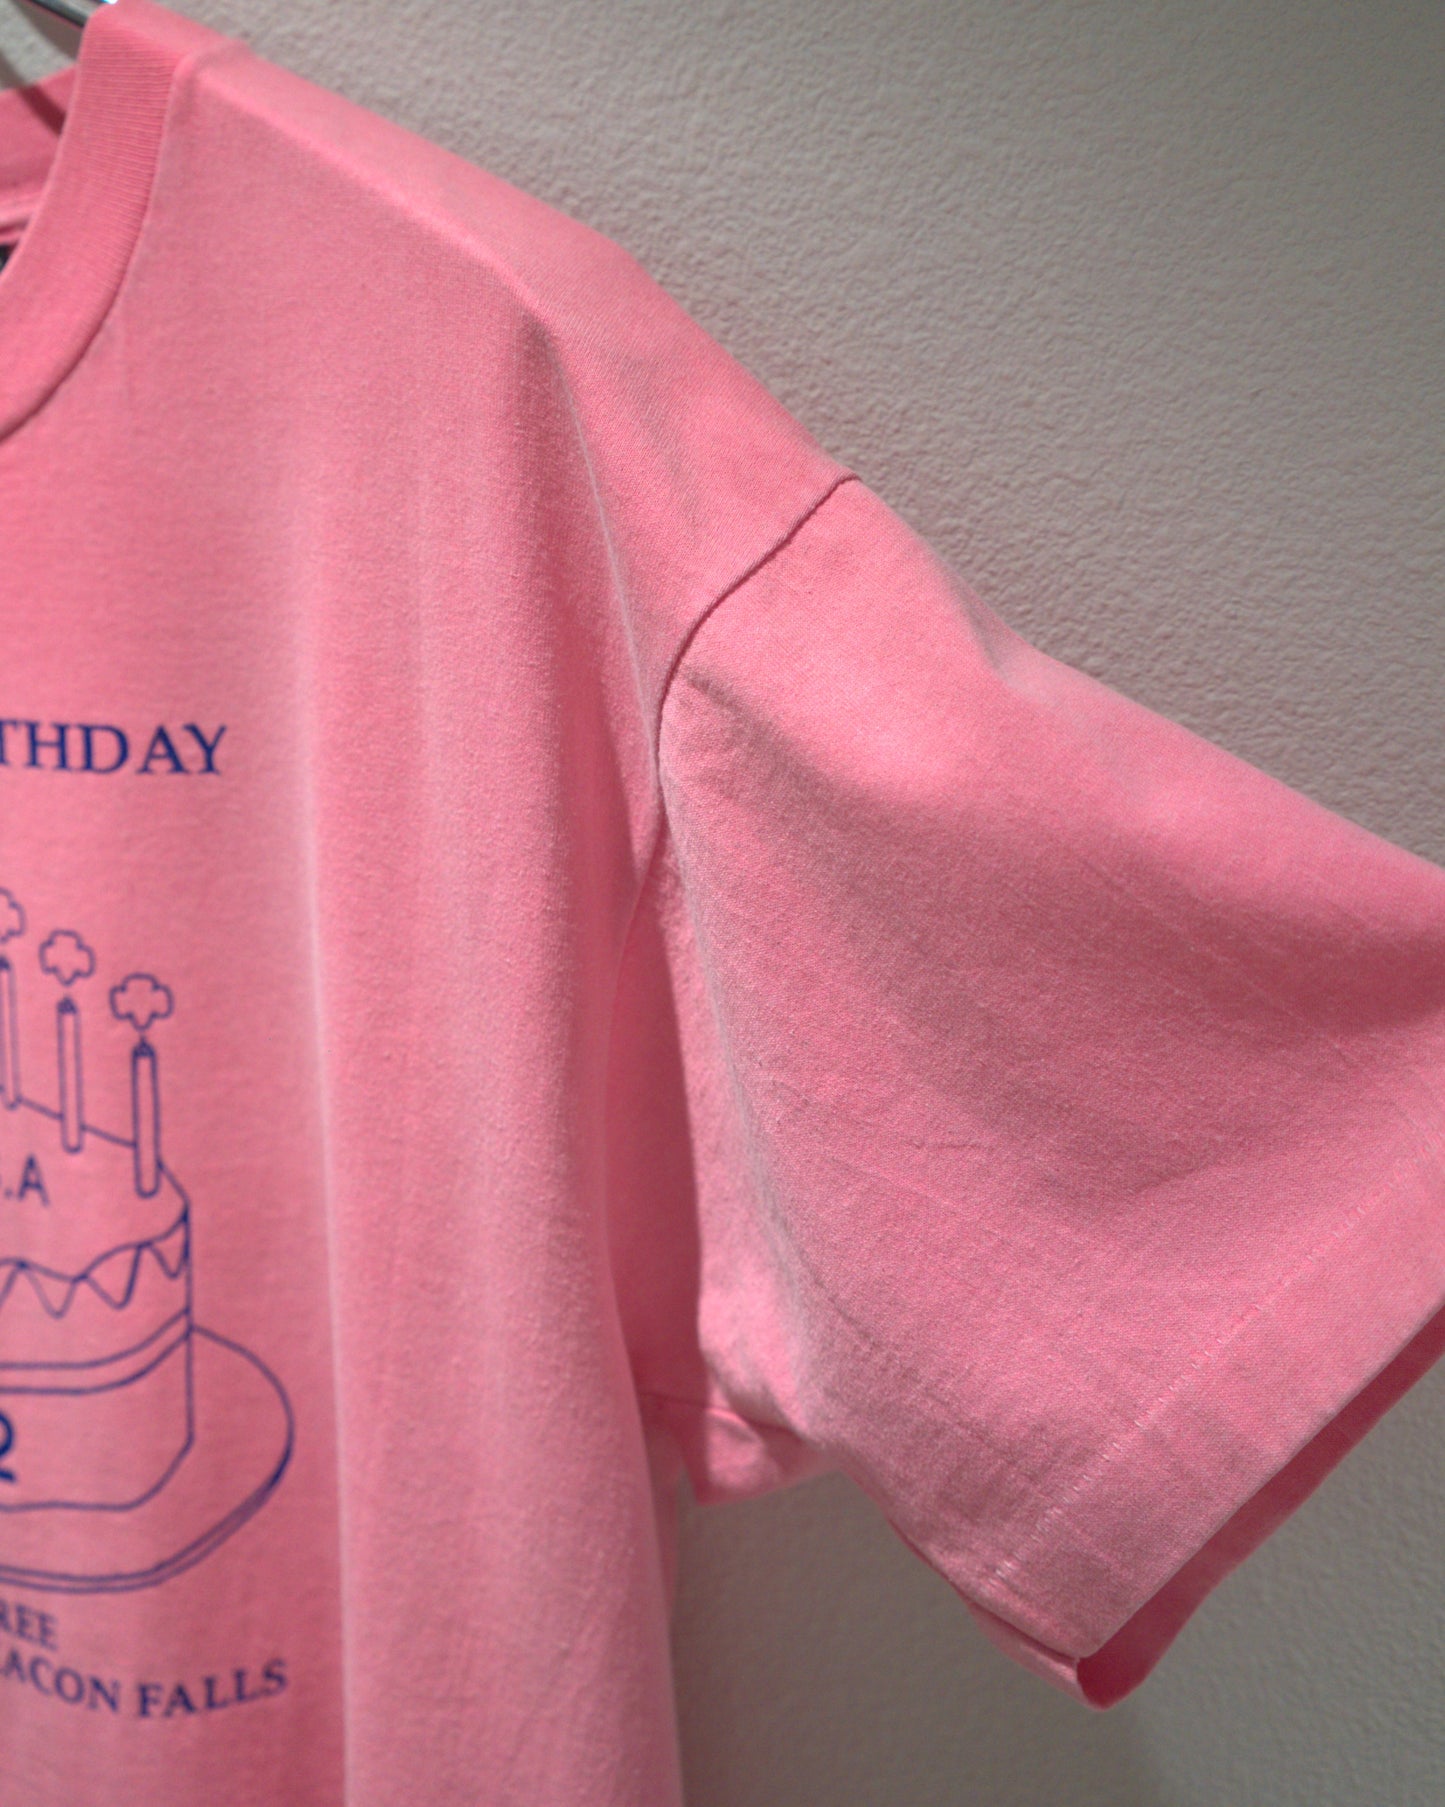 90's Birthday T-shirt